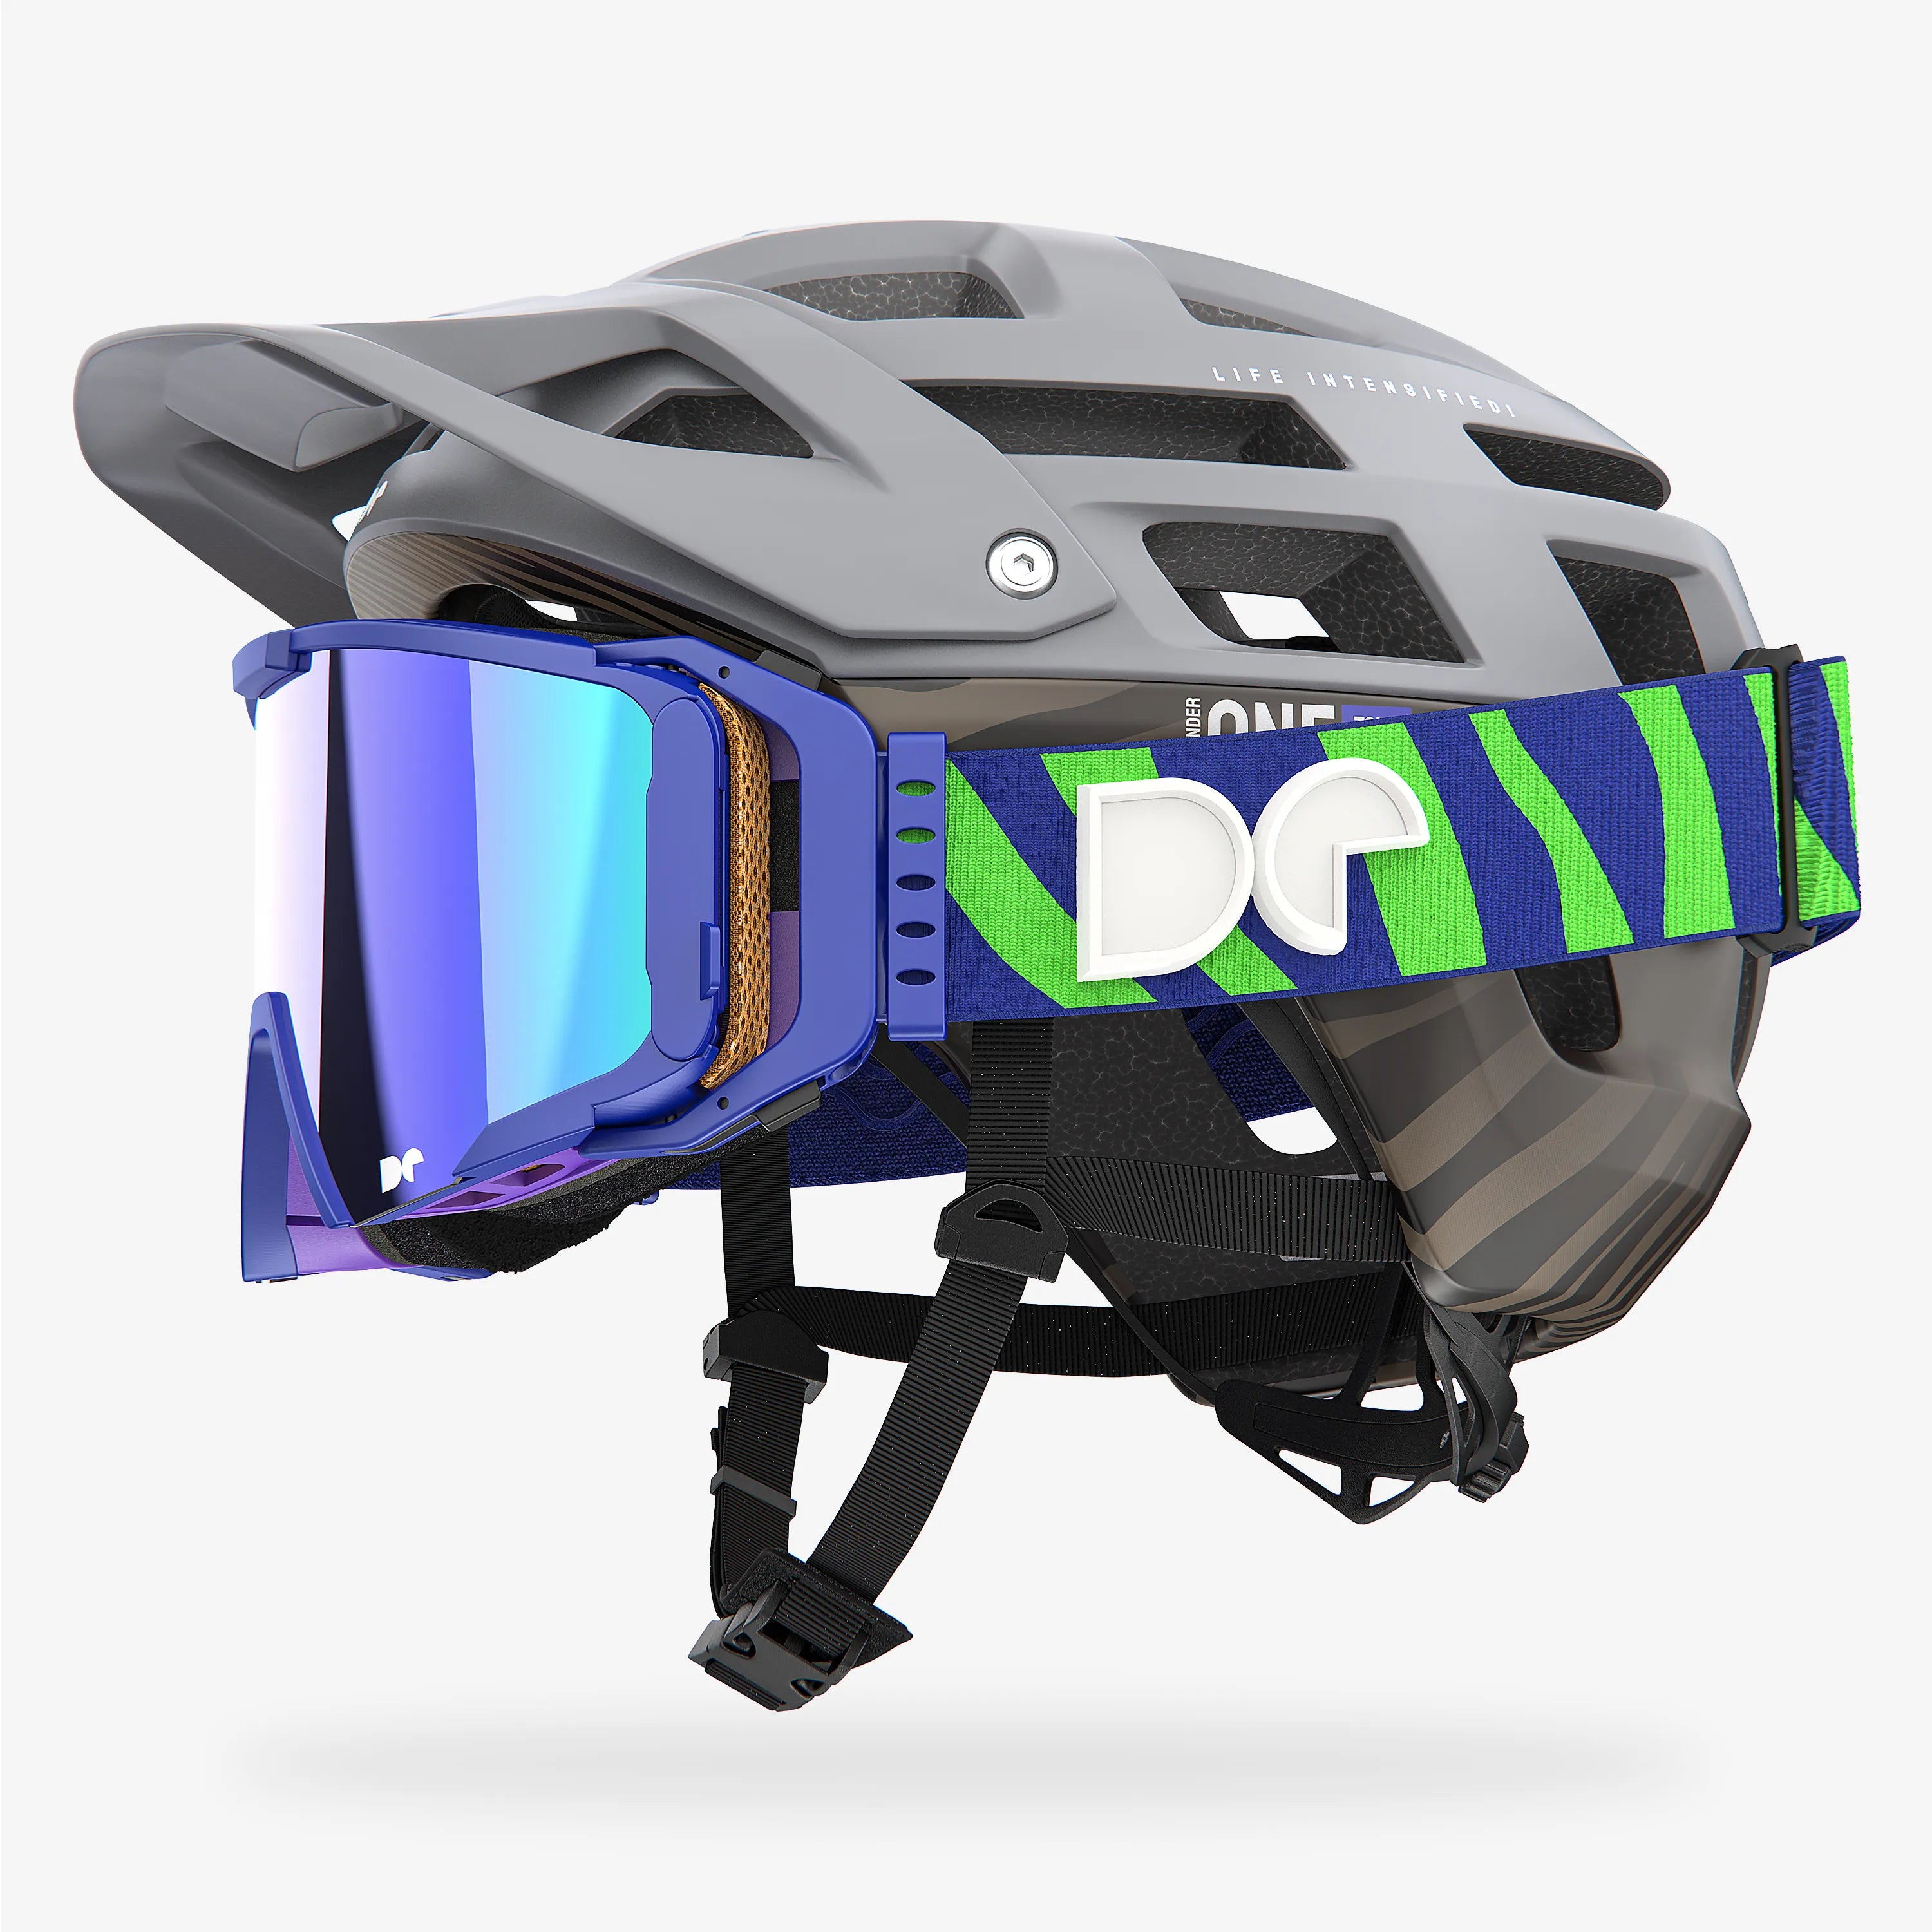 Casco de bicicleta de montaña Defender One Tour Nardo gris + gafas Sporter Boostup All Road